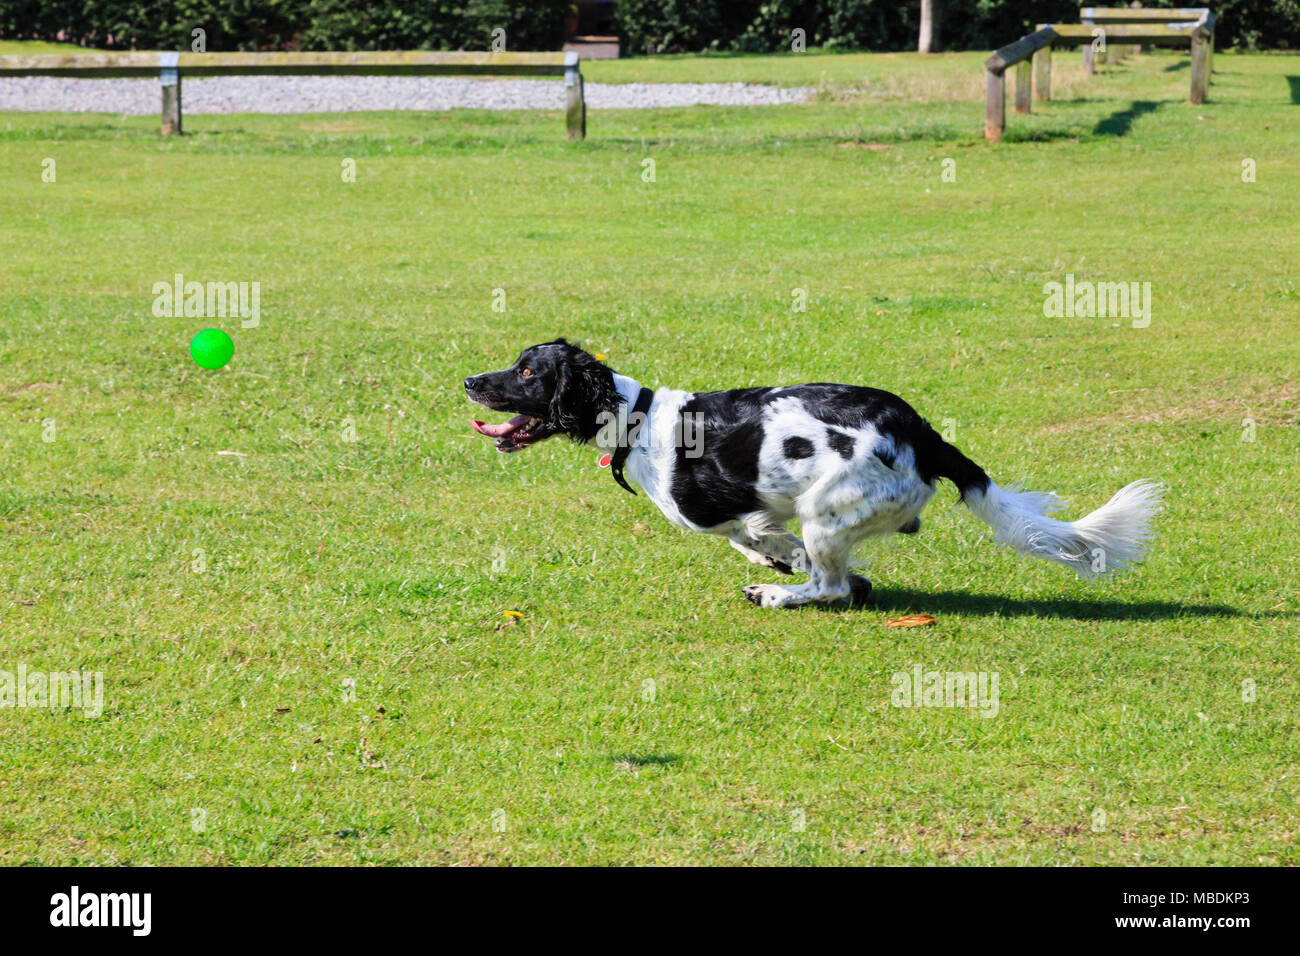 Un adulte Noir et Blanc English SPRINGER SPANIEL (Canis lupus familiaris) chien courir vite à la poursuite d'un ballon à l'extérieur dans un parc. En Angleterre, Royaume-Uni, Angleterre Banque D'Images